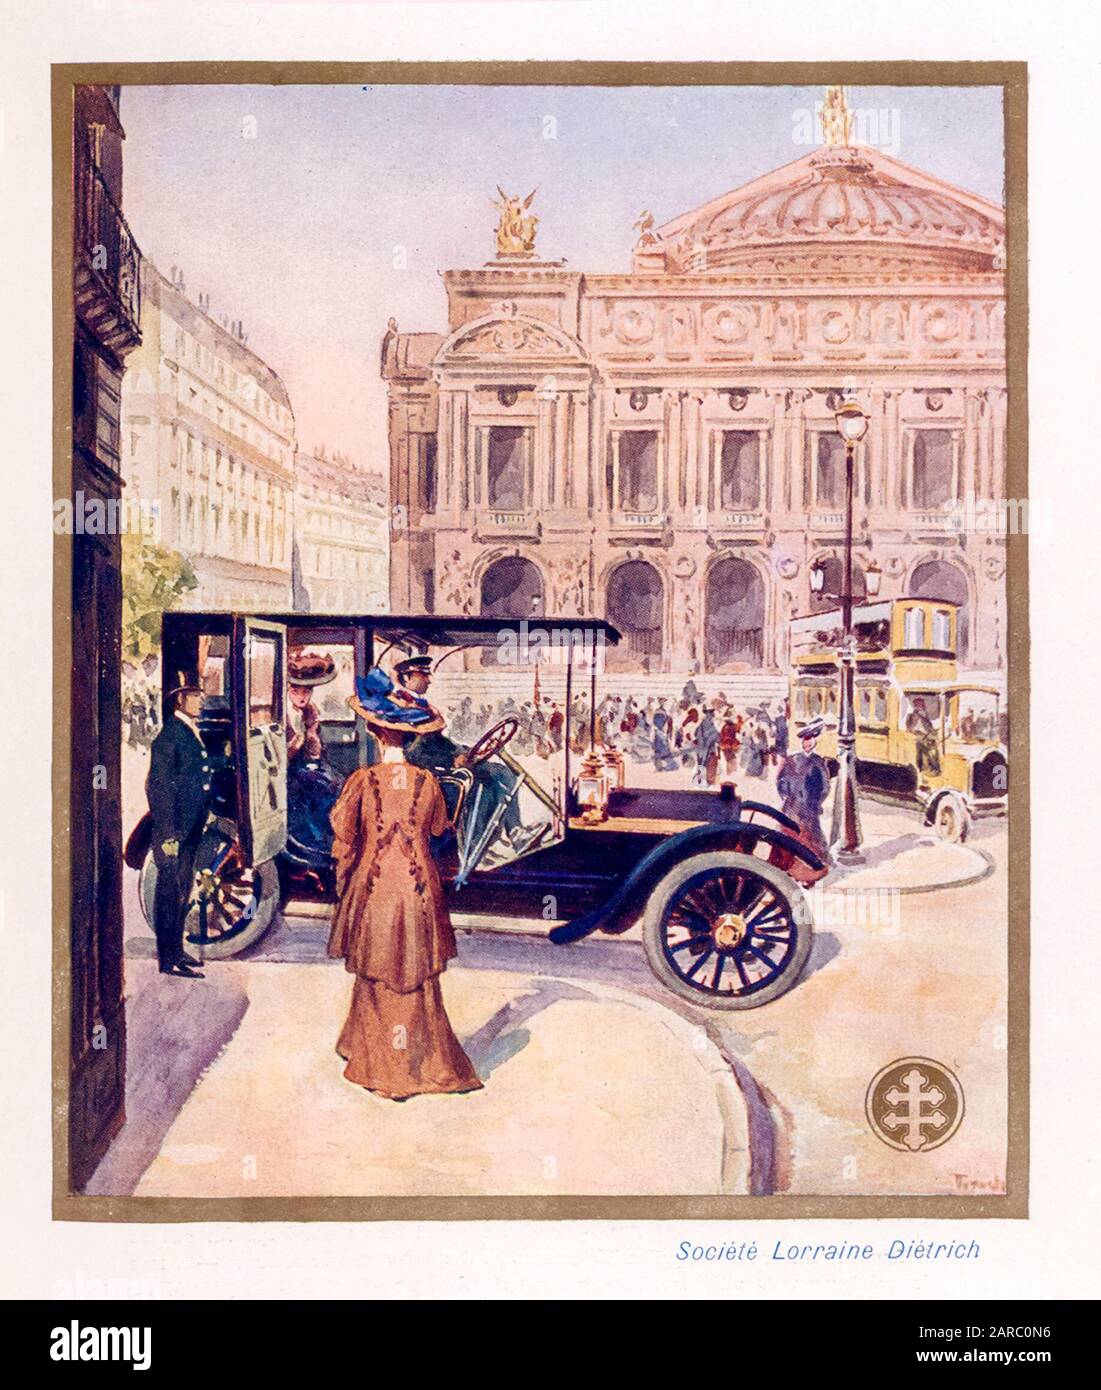 Lorraine Diétrich automobiles, voiture de style rétro dans une rue de la ville, lacustre promotionnel 1909 Banque D'Images